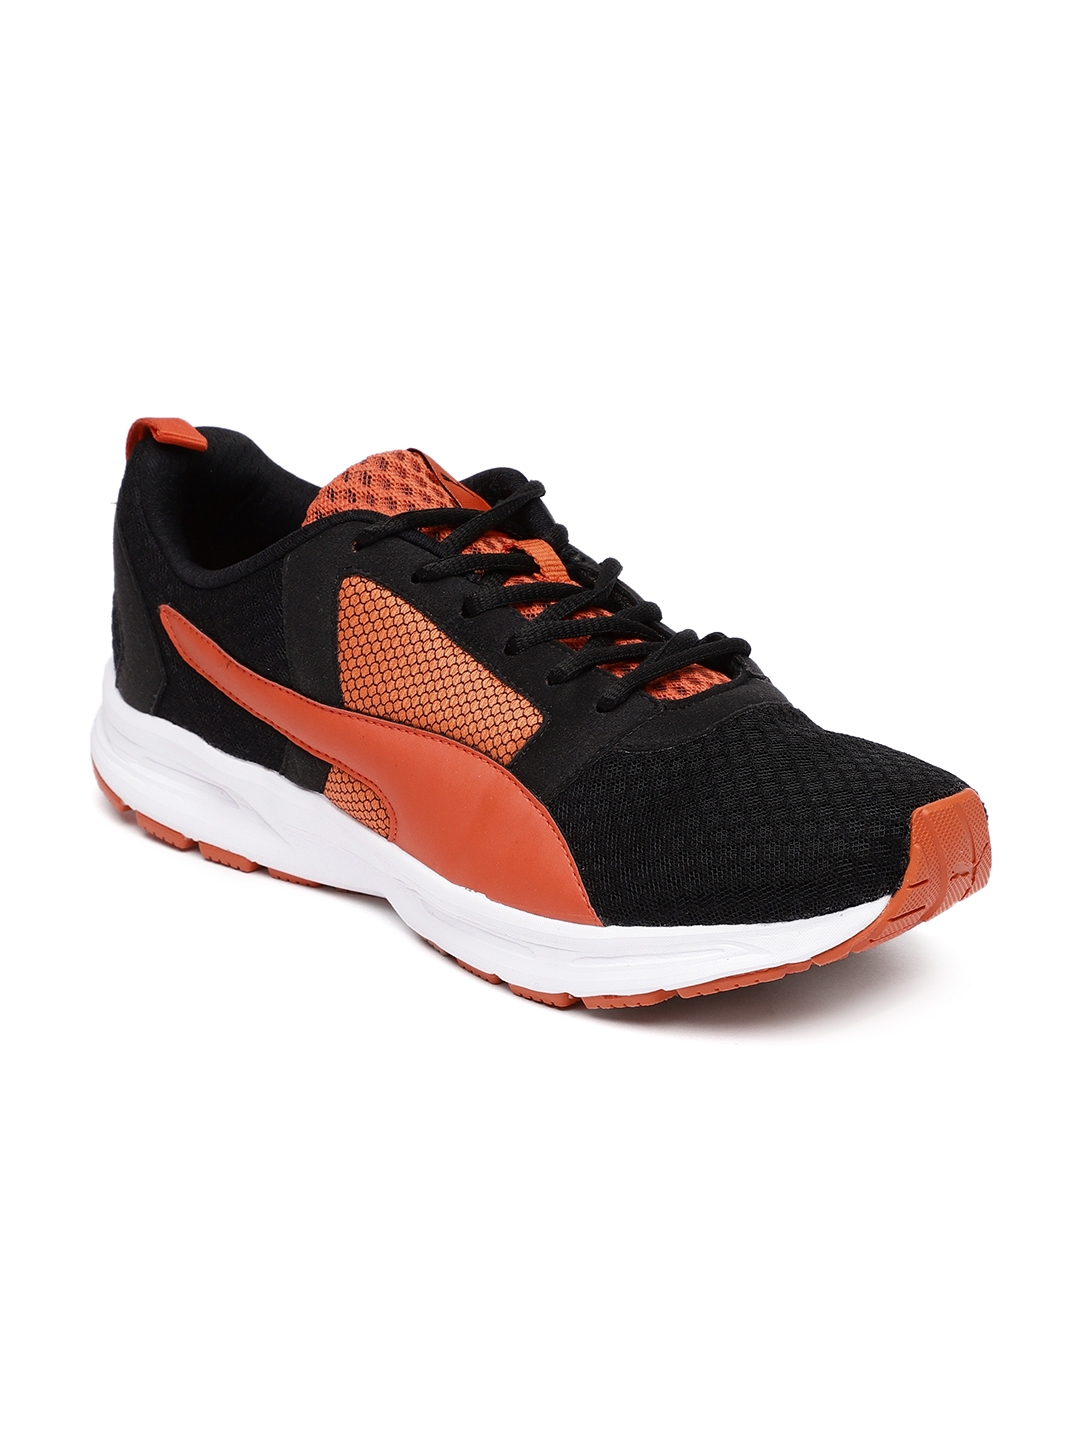 Buy Puma Men Black Orange Deng Sneakers - Casual Shoes for Men 6703353 ...